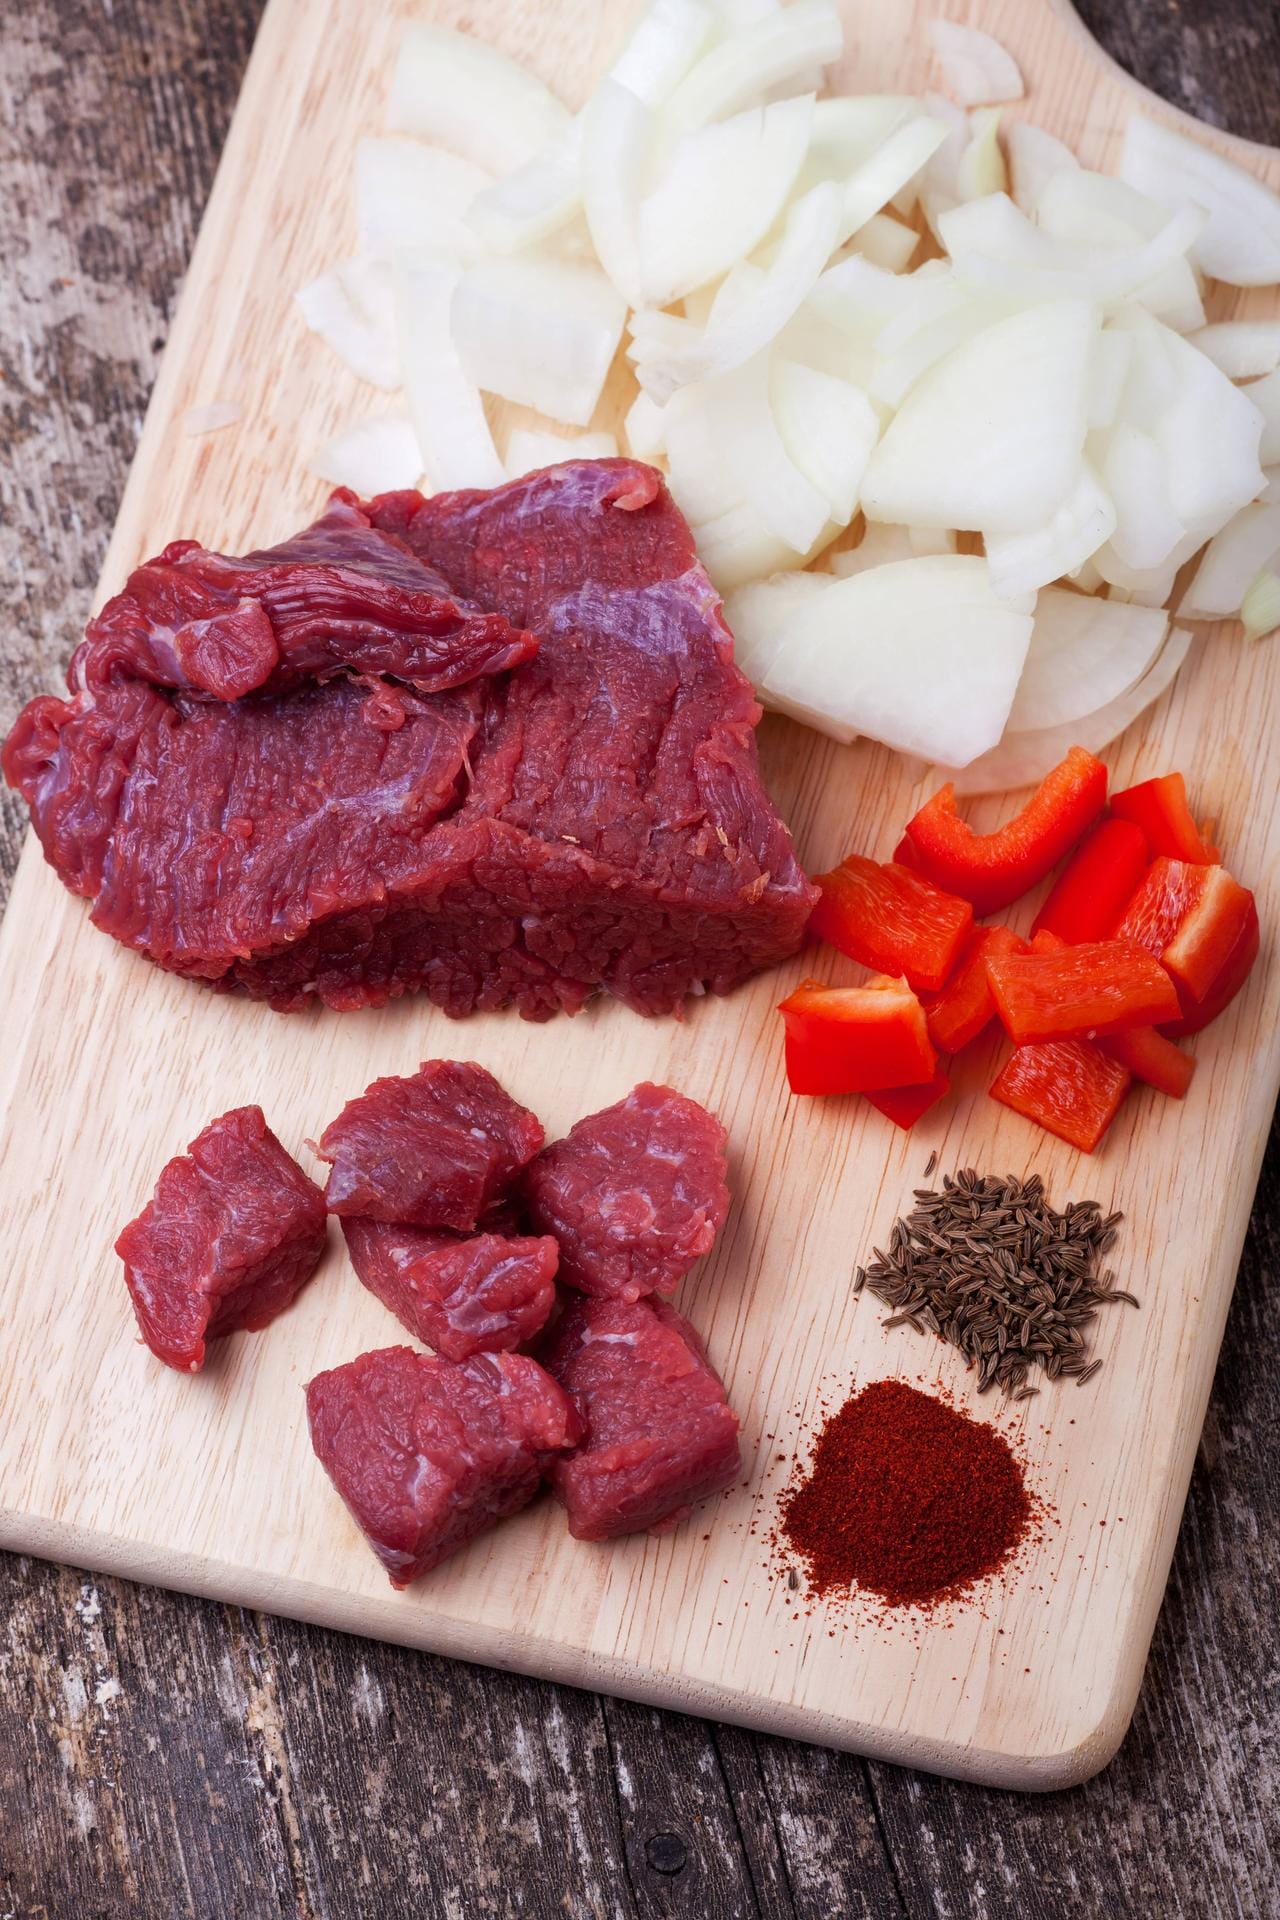 Neben Fleisch, sind Zwiebeln und Paprikapulver die typischen Zutaten für ein ungarisches Gulasch.